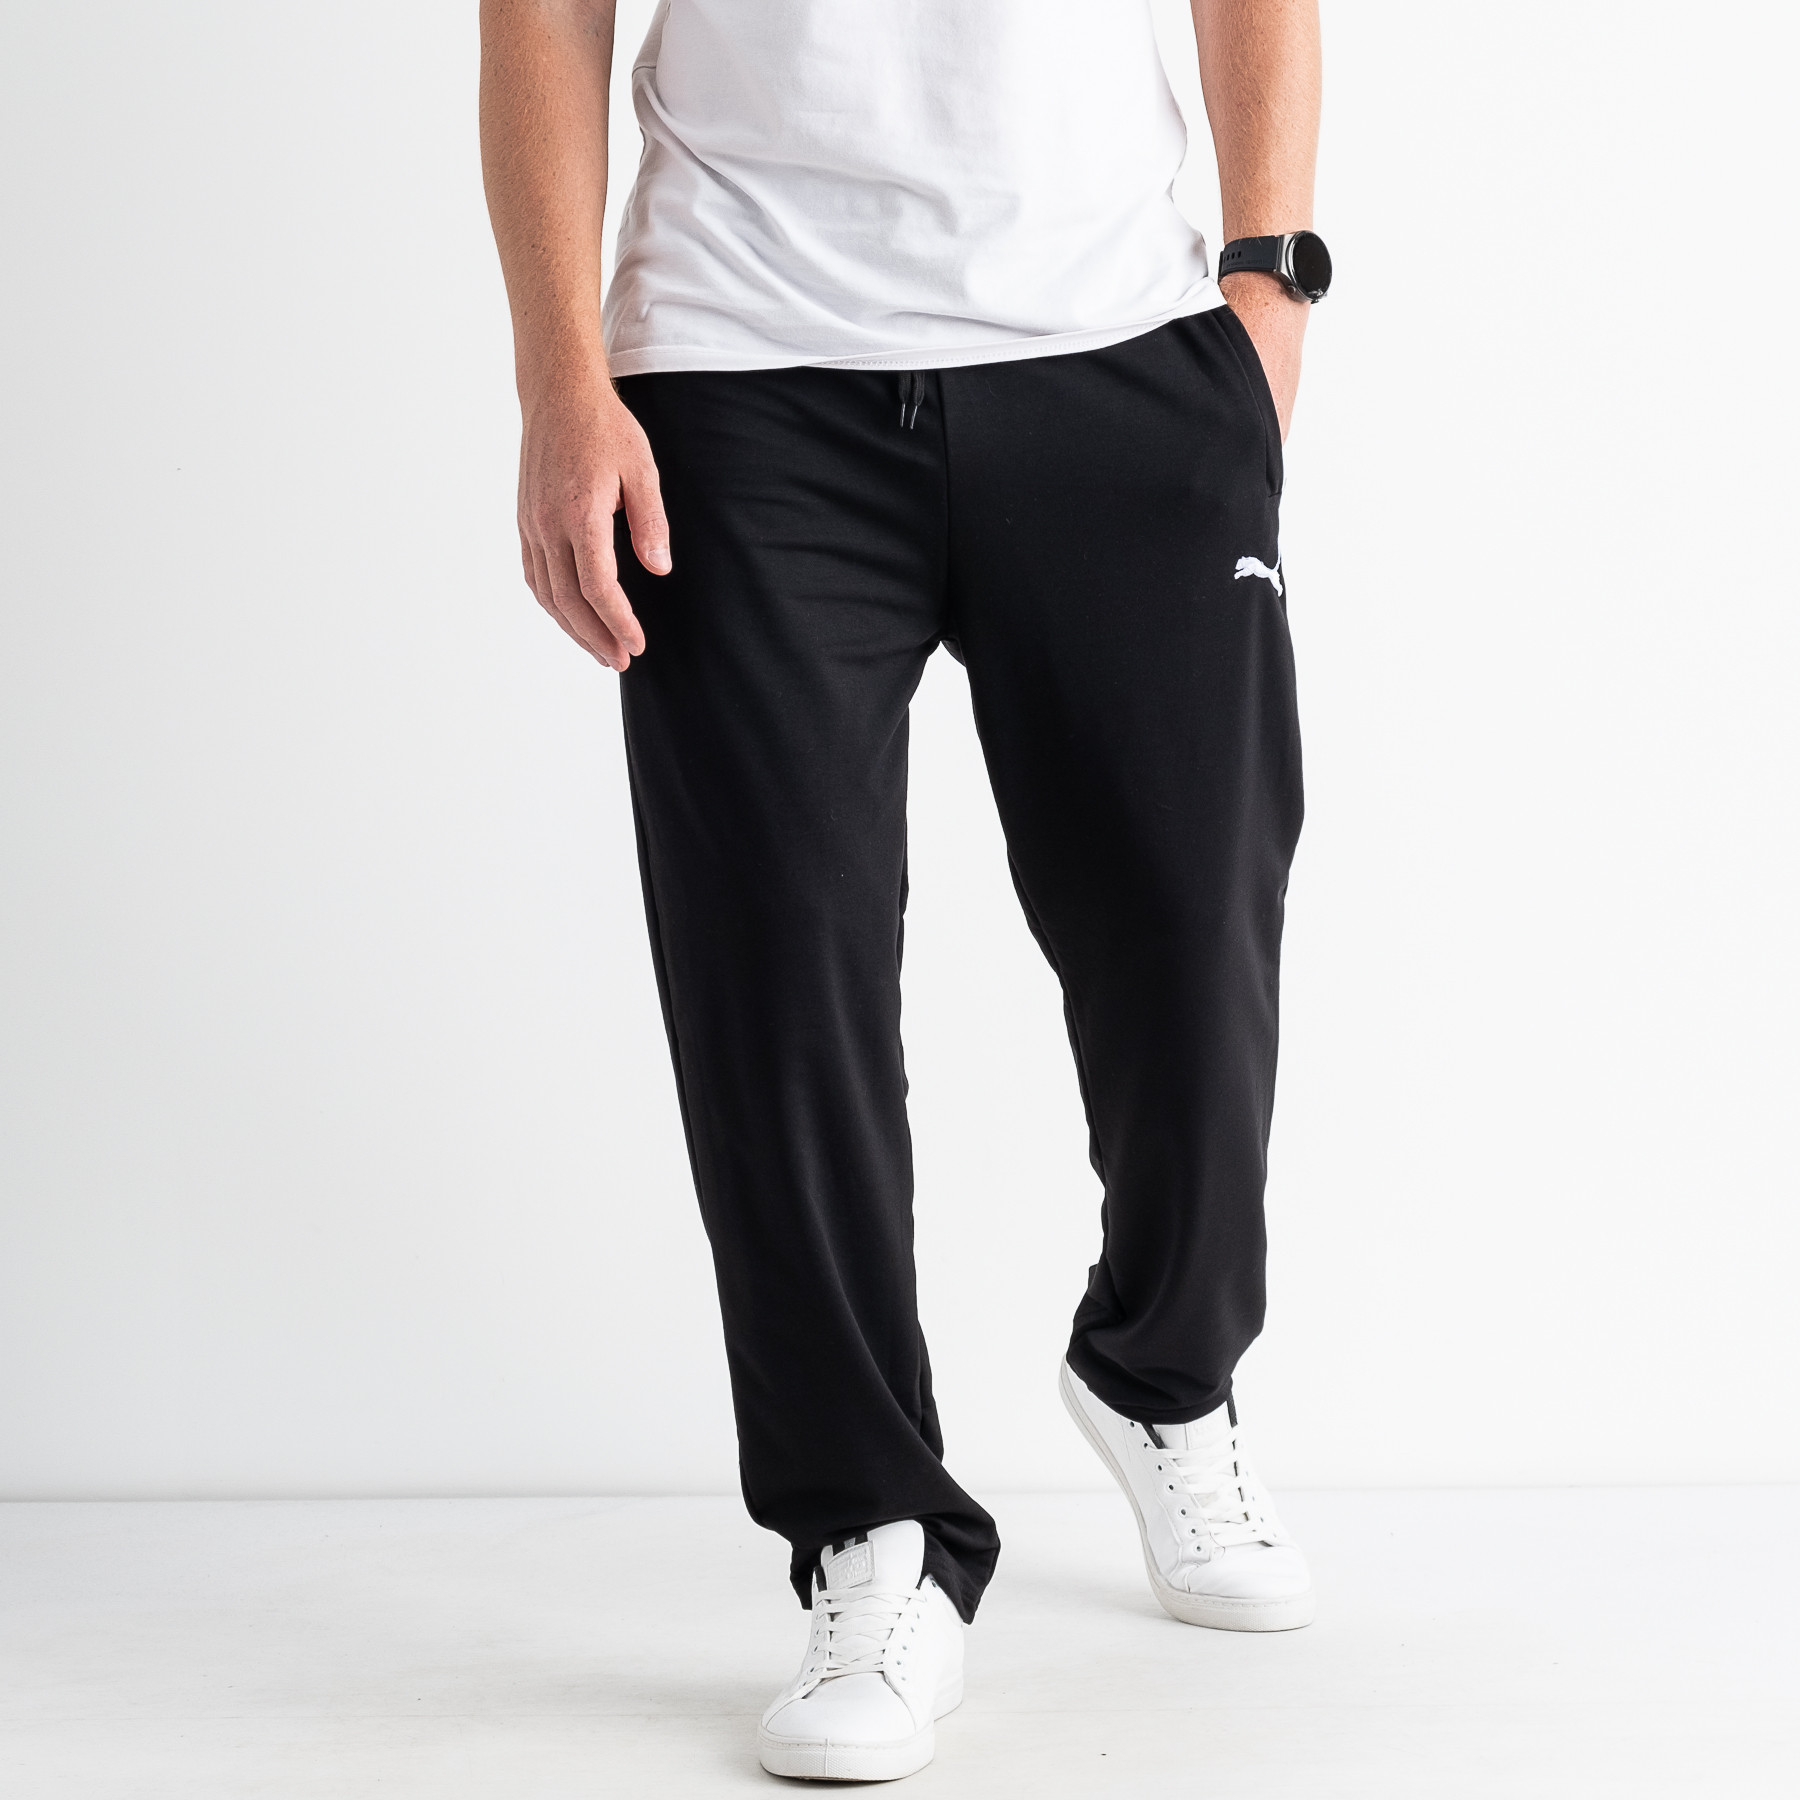 4255-1 ЧЕРНЫЕ батальные спортивные штаны мужские из двунитки (5 ед. размеры: 56.58.60.62.64)